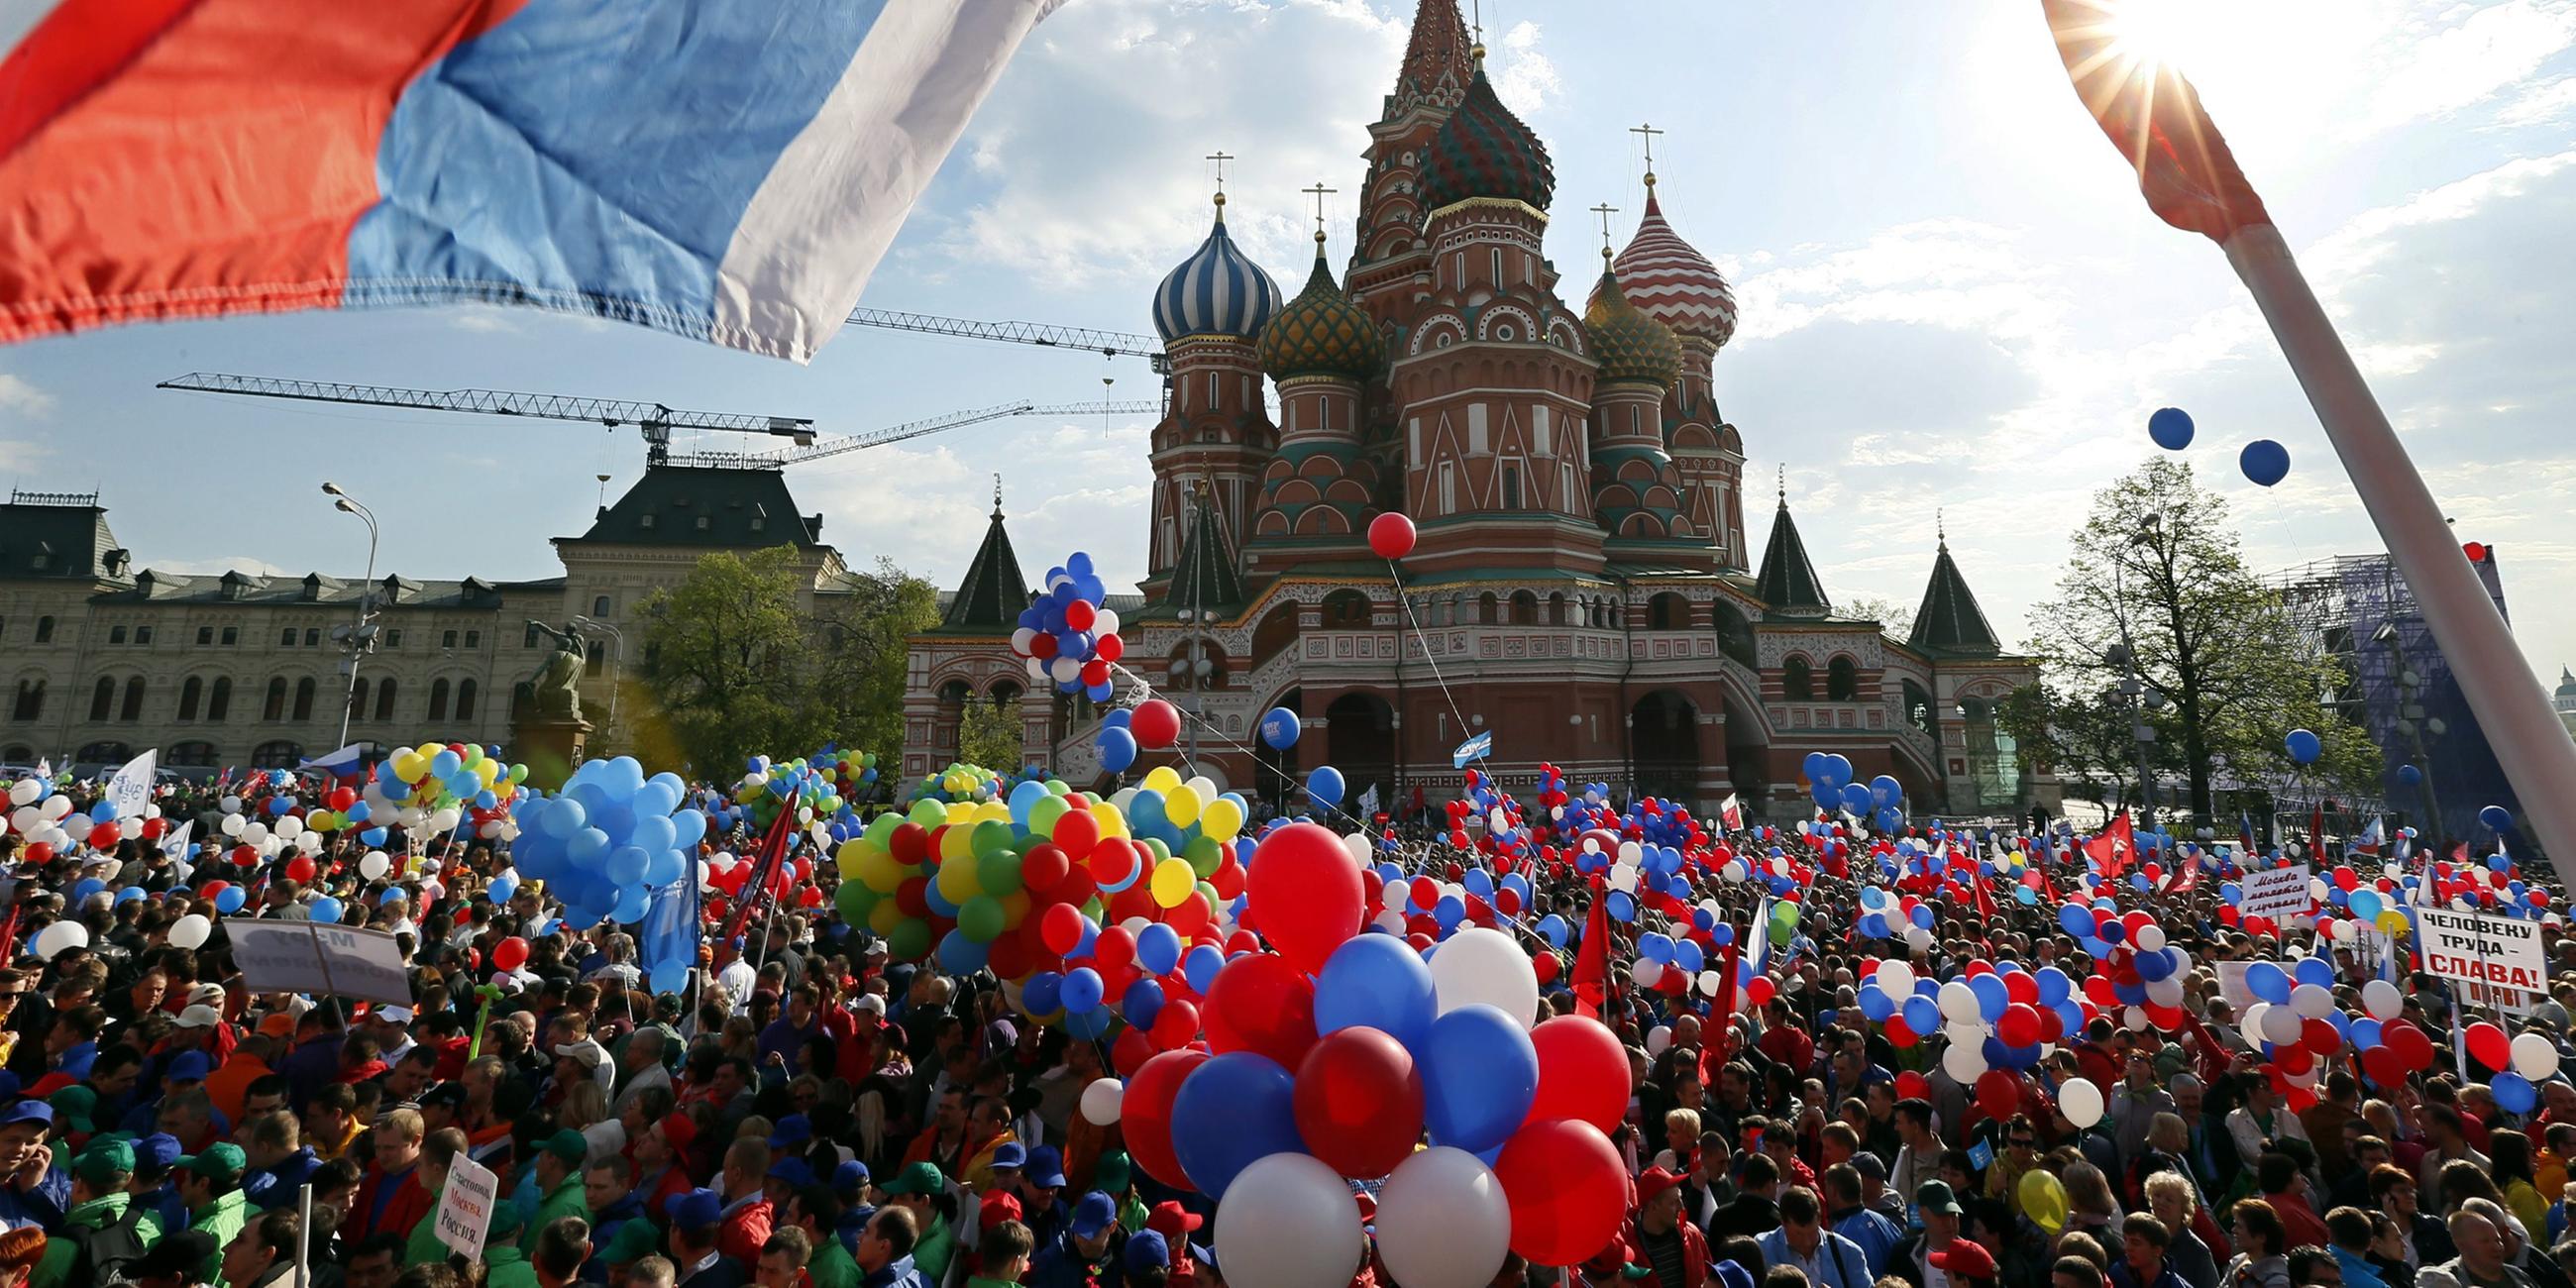 Archiv: Menschen gehen mit Fahnen und Luftballons auf dem Roten Platz während einer Kundgebung in Moskau, Russland, 1. 5. 2014.